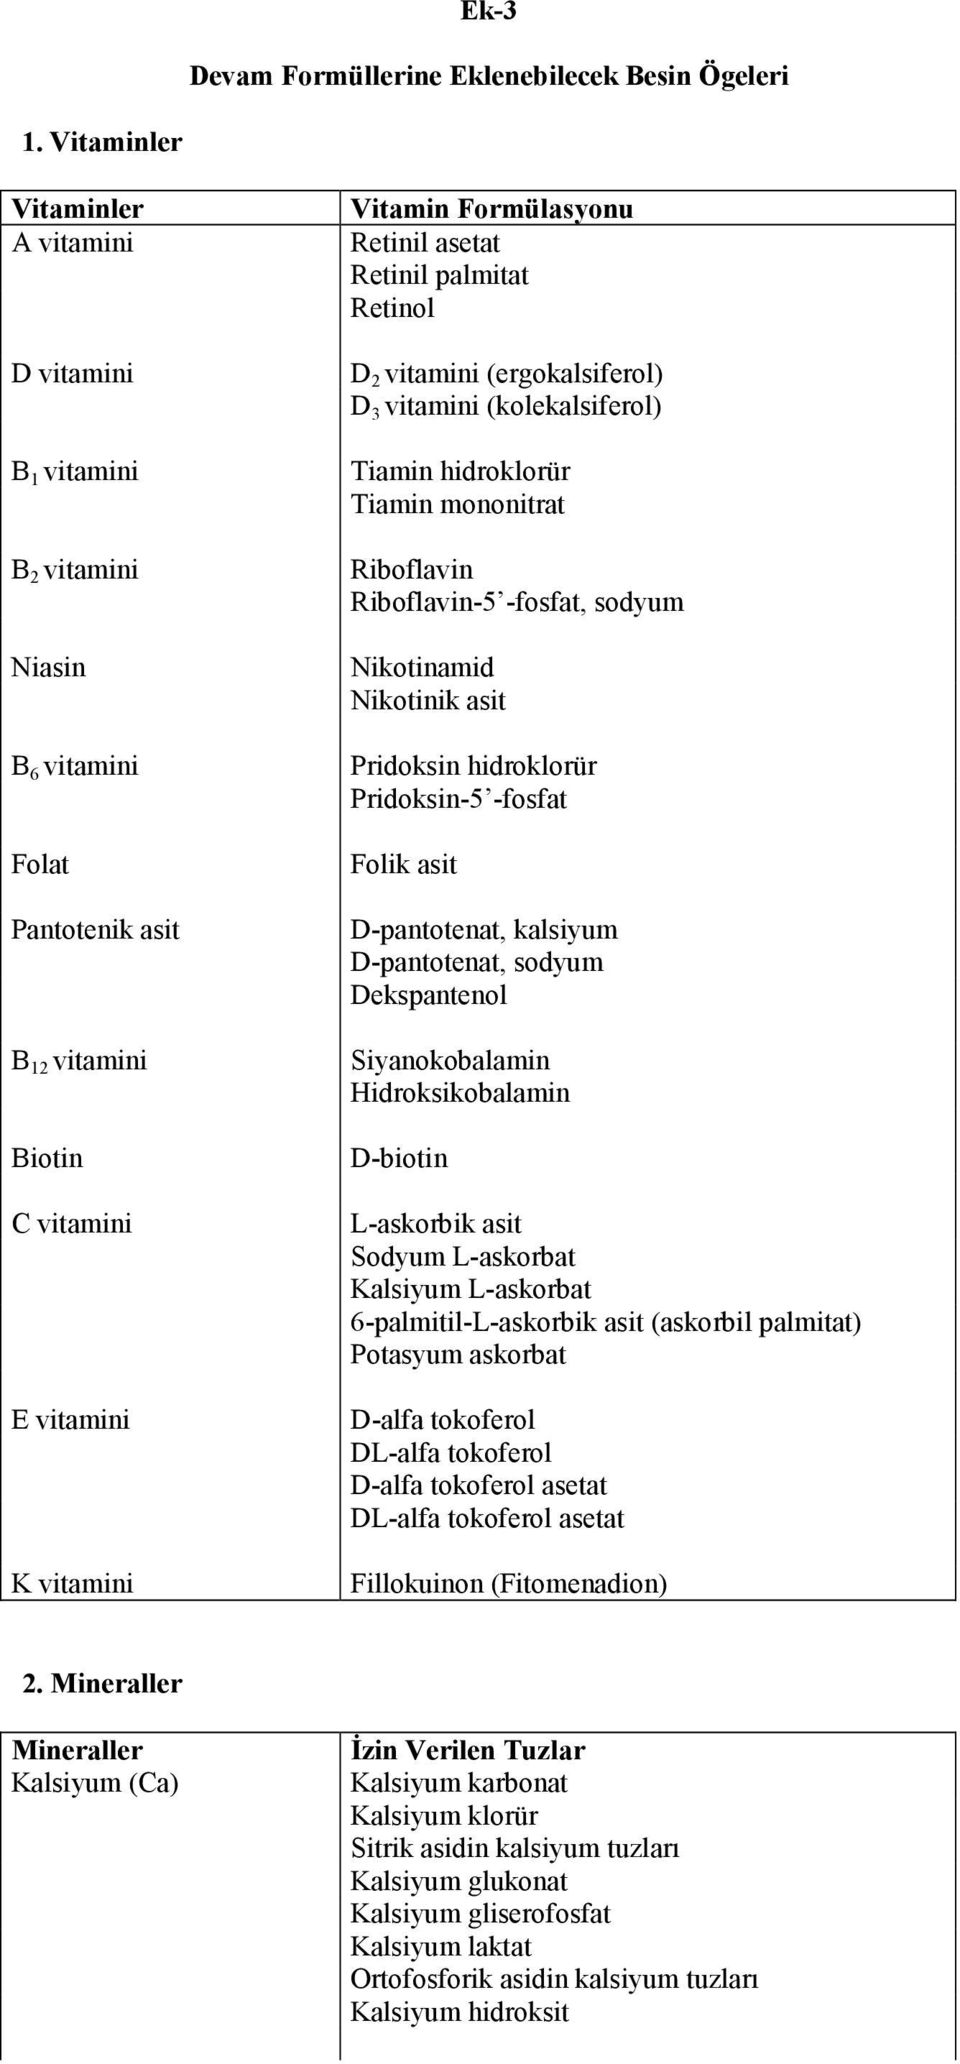 asetat Retinil palmitat Retinol D 2 vitamini (ergokalsiferol) D 3 vitamini (kolekalsiferol) Tiamin hidroklorür Tiamin mononitrat Riboflavin Riboflavin-5 -fosfat, sodyum Nikotinamid Nikotinik asit